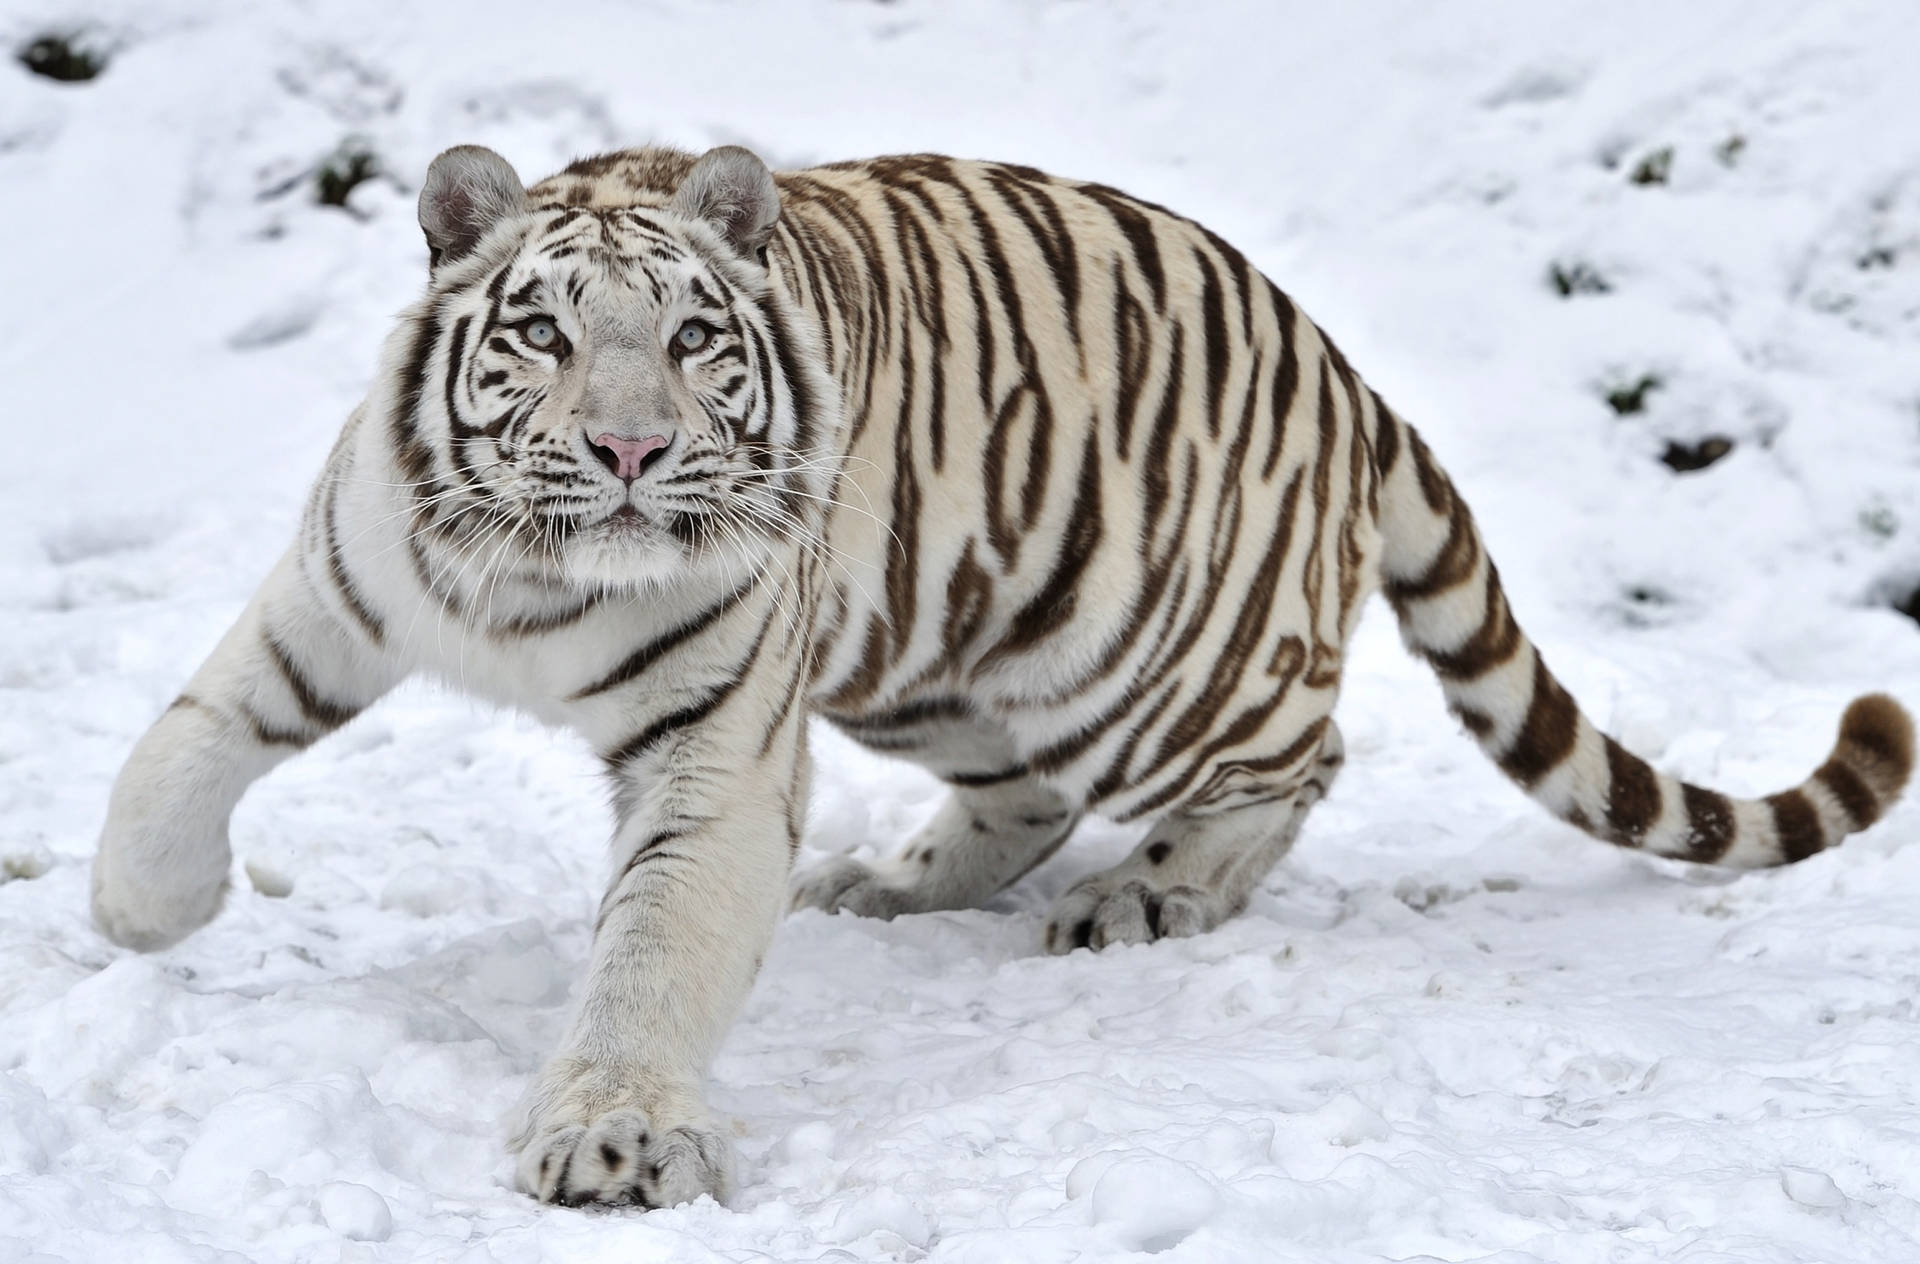 White Tiger in Winter Wonderland Wallpaper